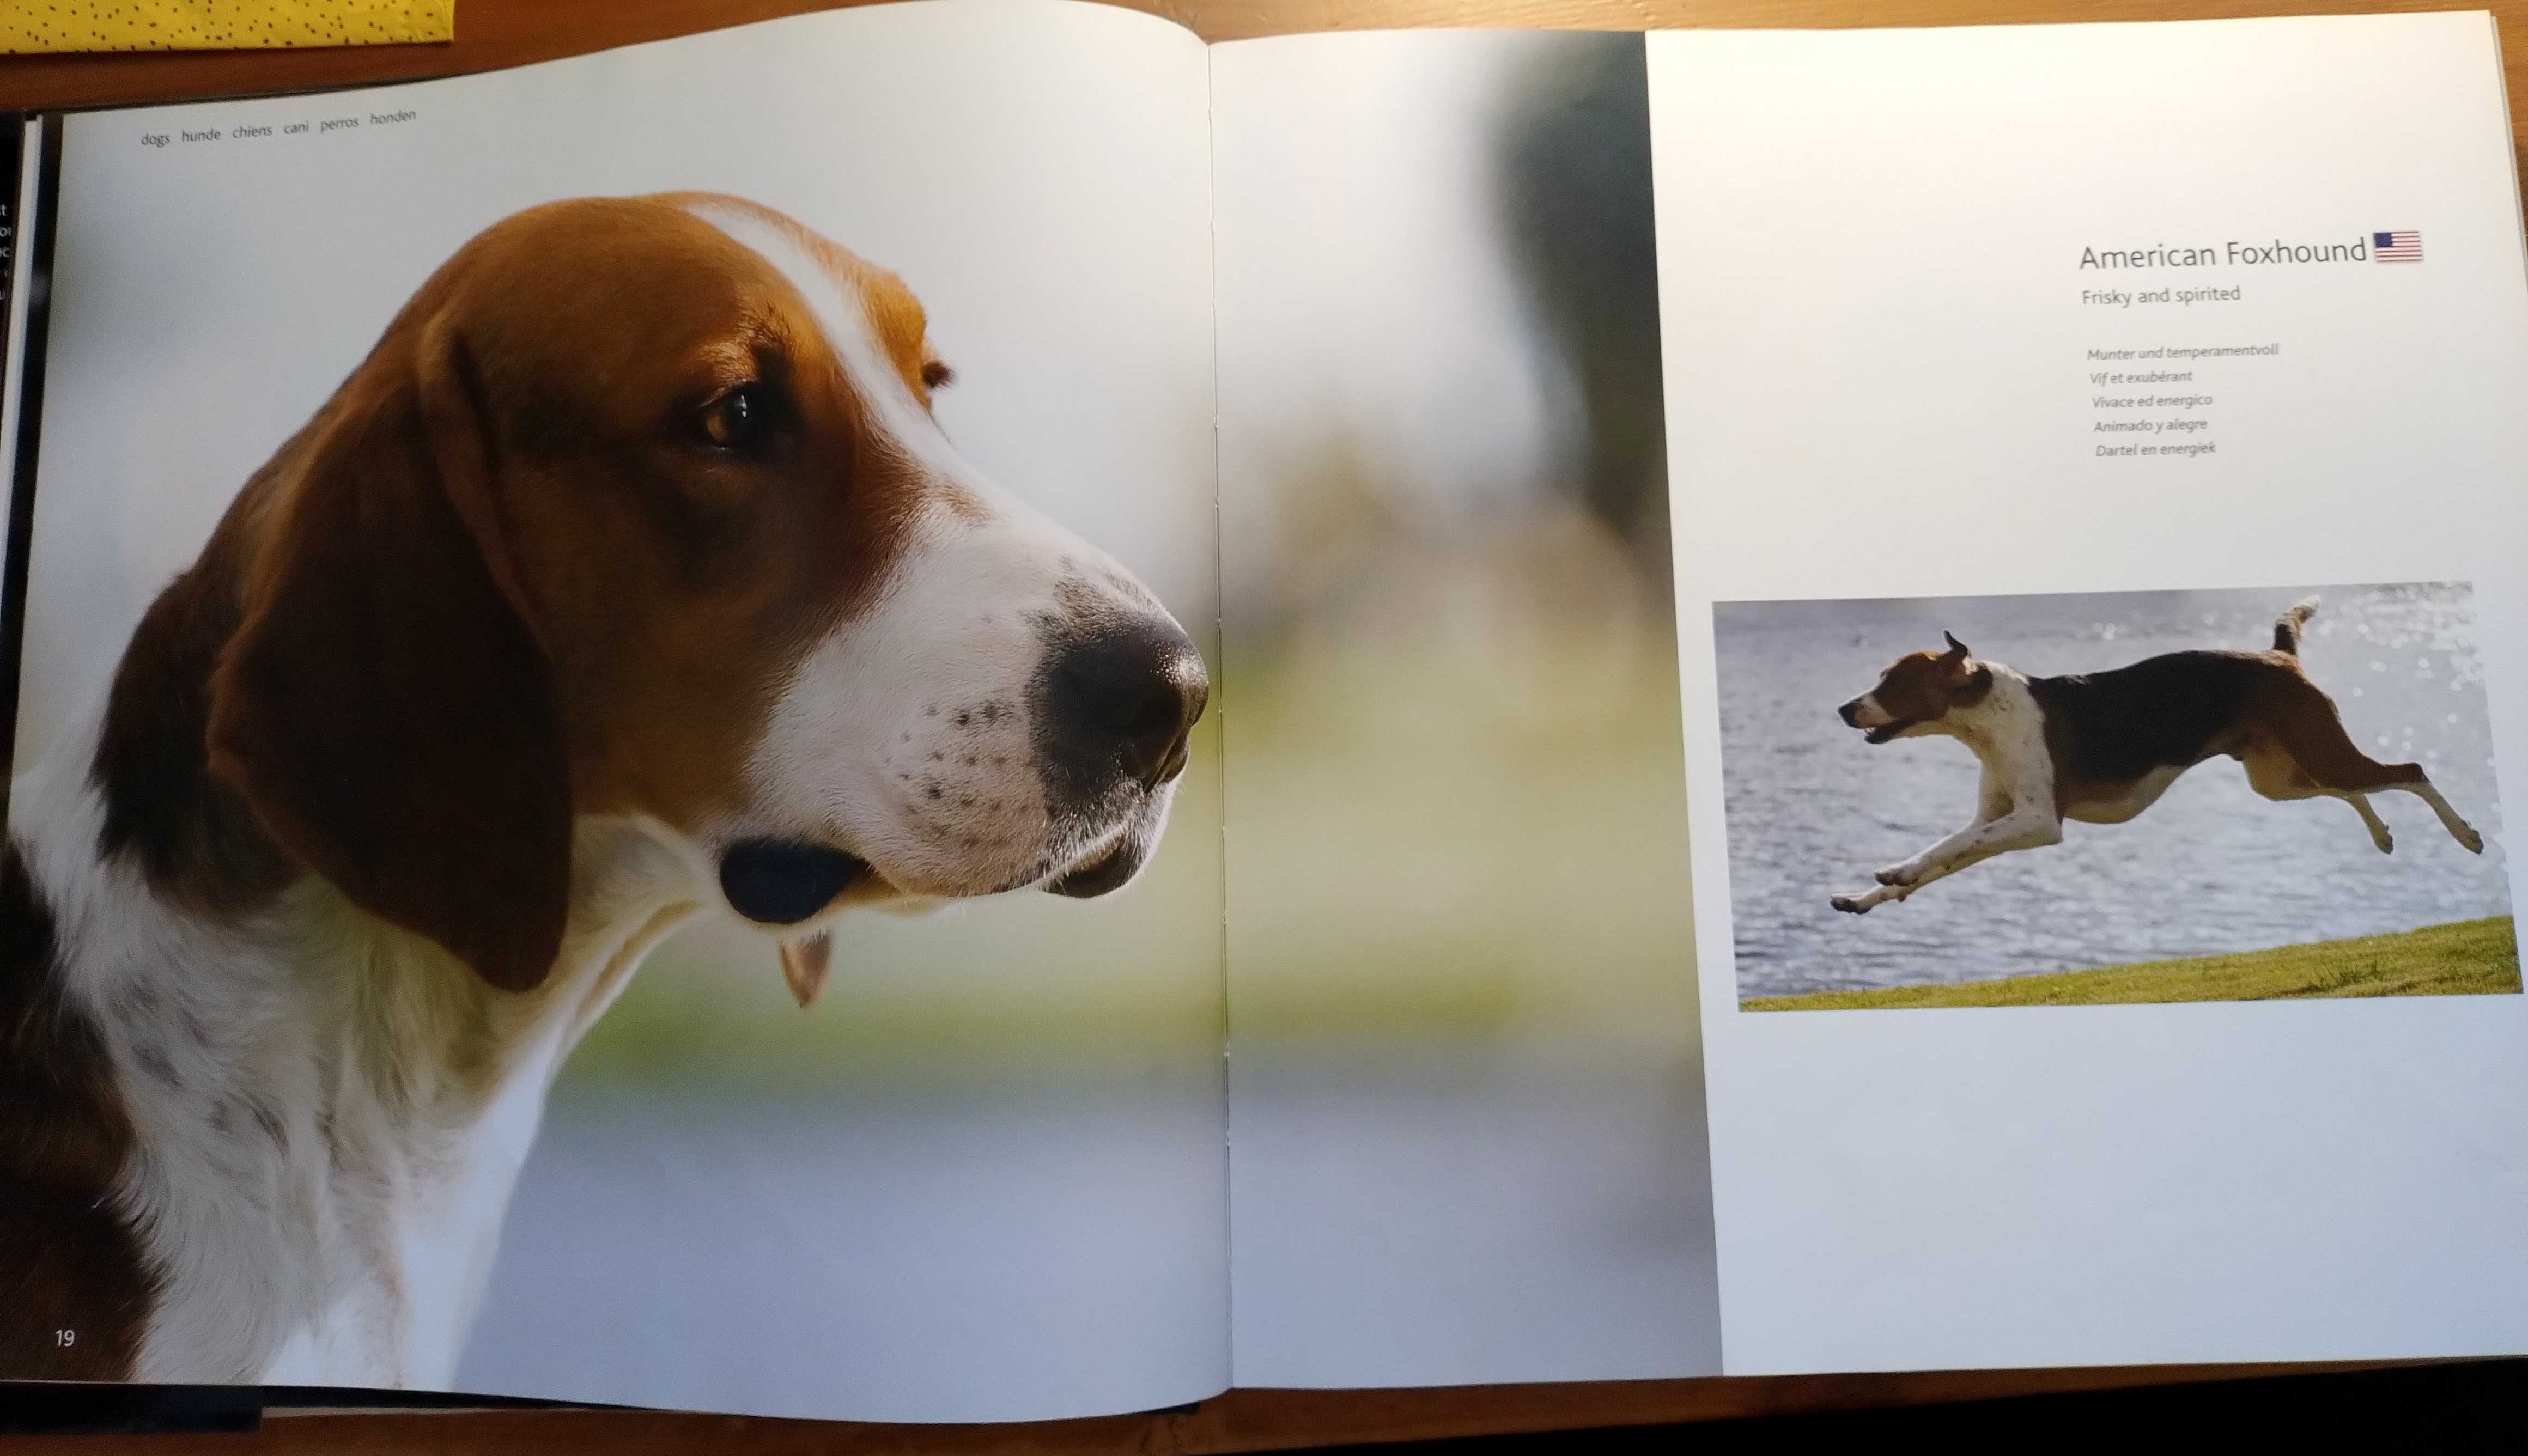 Album o psach Eukanuba dogs A-G, piękne zdjęcia, fajny dla dziecka